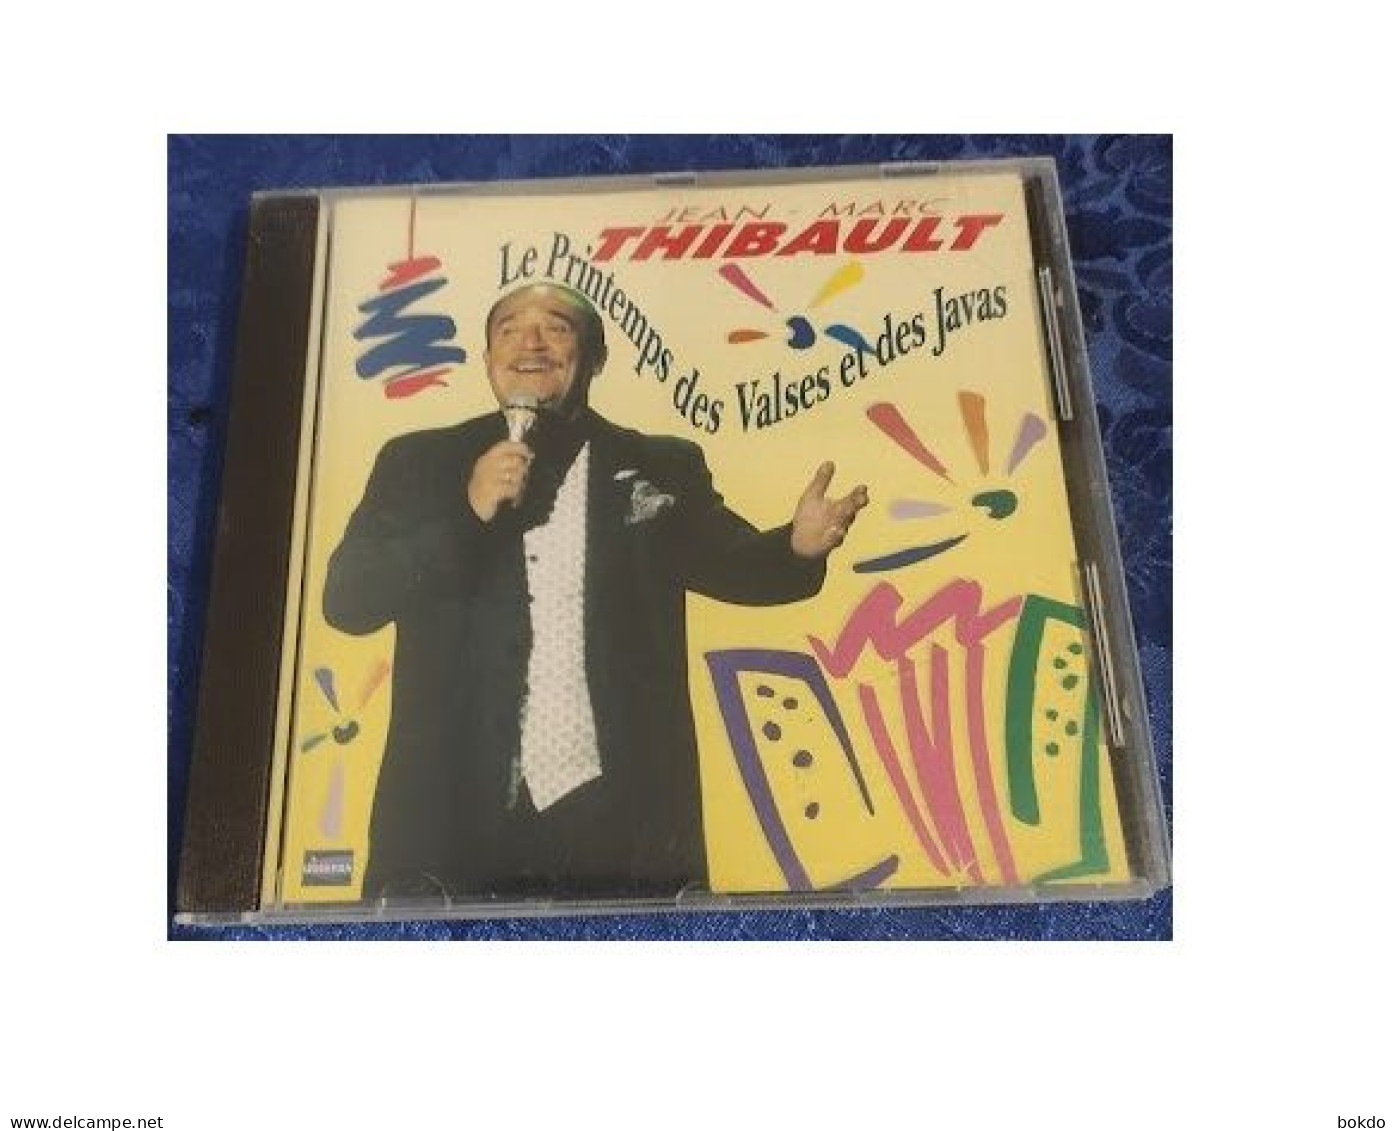 THIBAULT Jean Marc - Le Printemps Des Valses Et Des Javas - Other - French Music